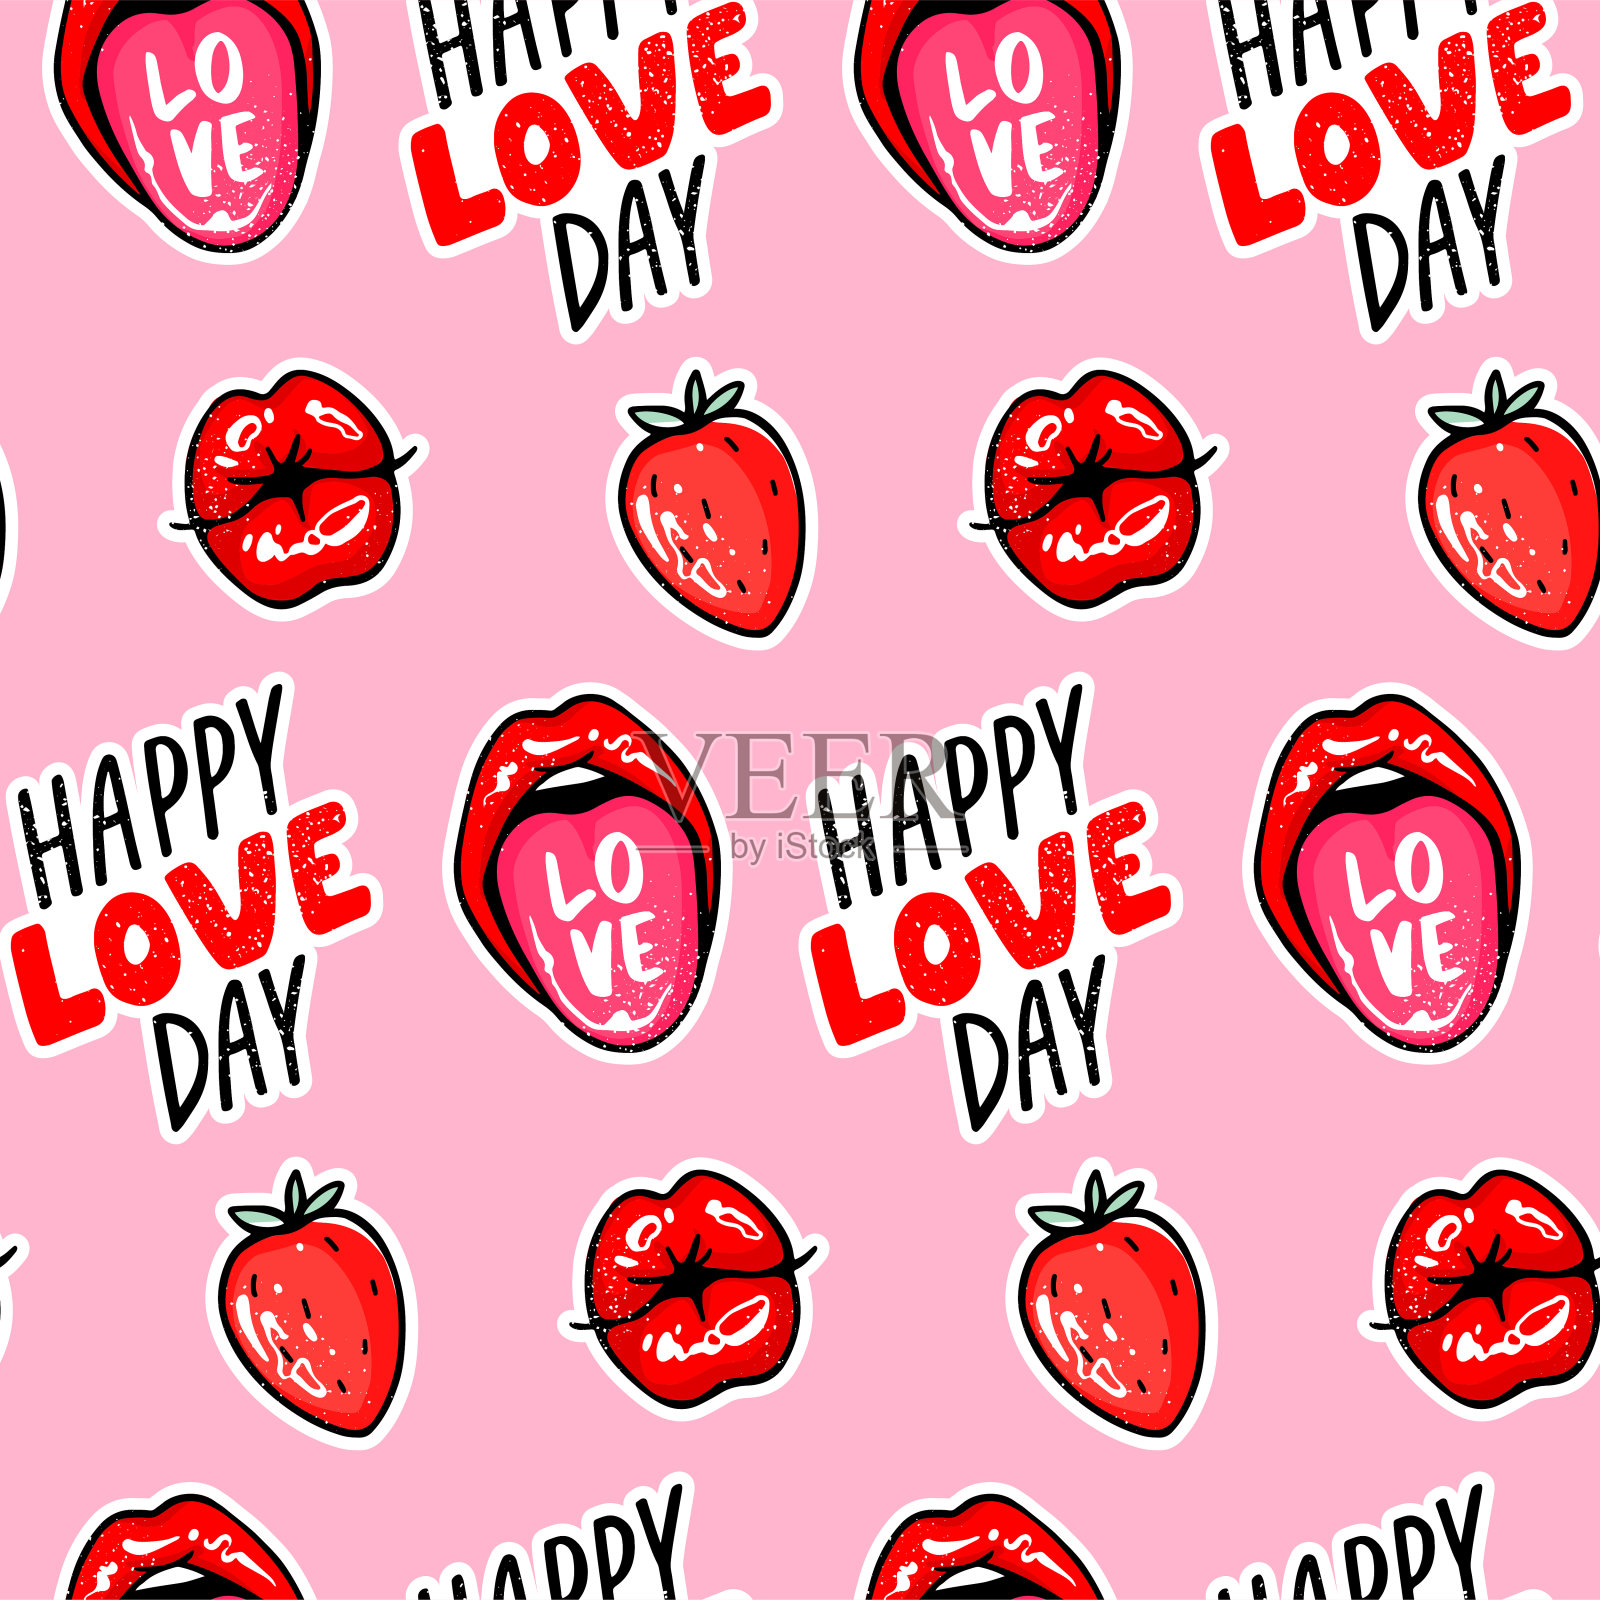 草莓之吻愛情貼紙藝術插畫 向量, 調情, 貼紙, 卡通片向量圖案素材免費下載，PNG，EPS和AI素材下載 - Pngtree